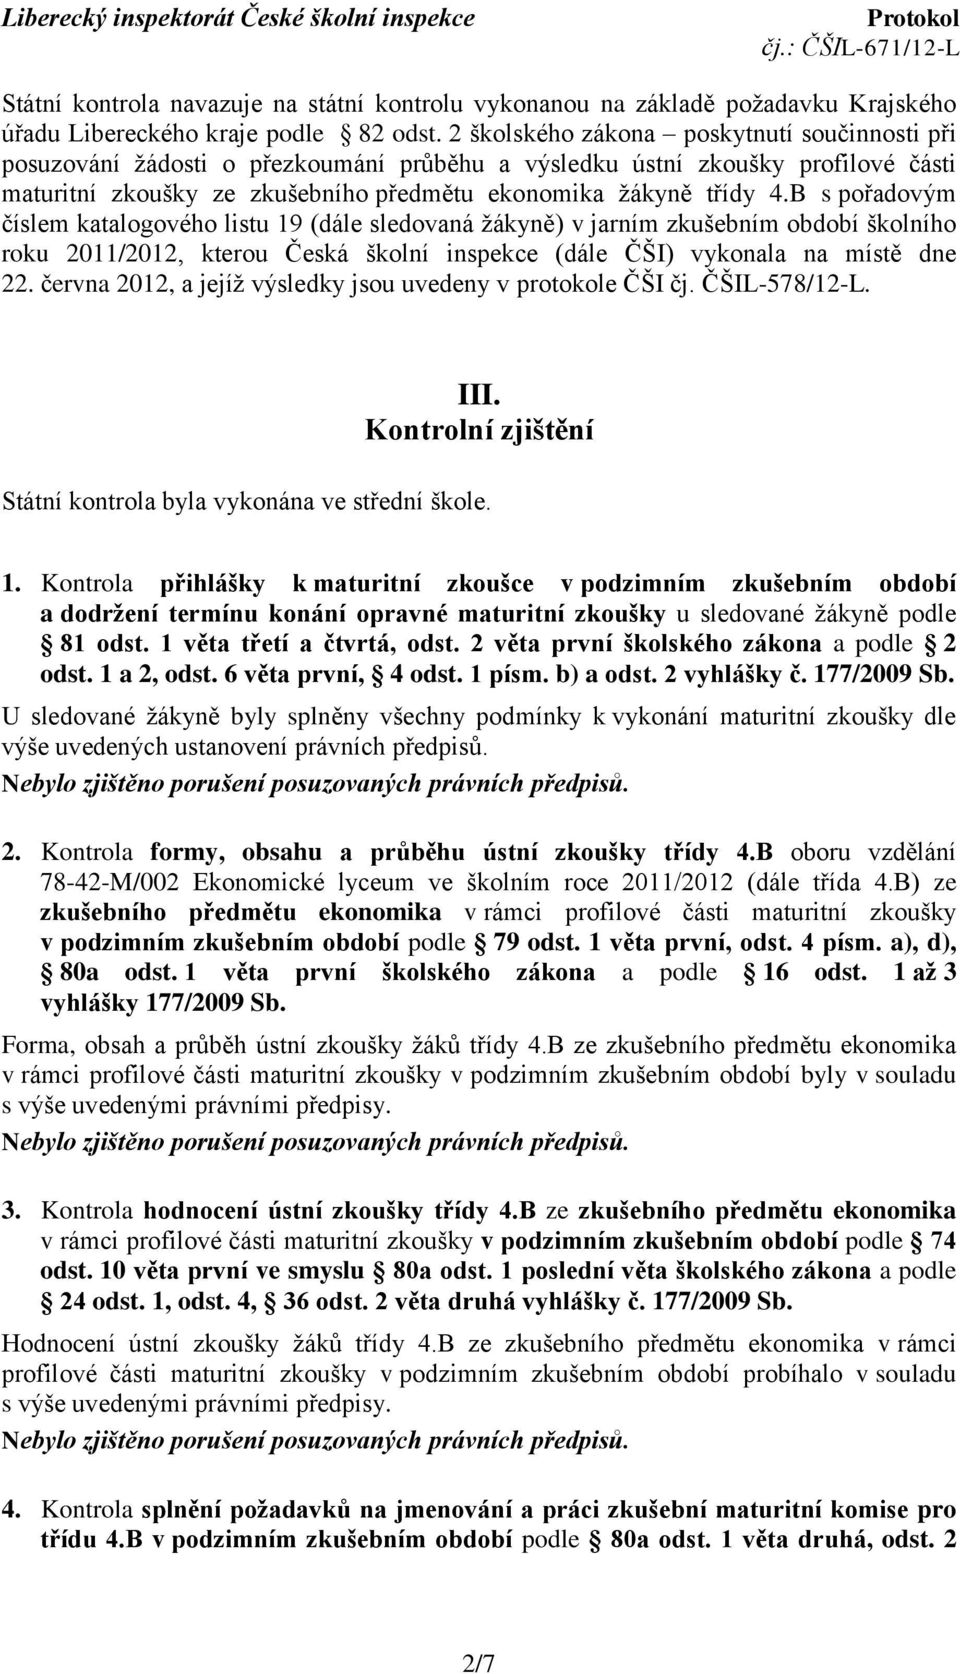 B s pořadovým číslem katalogového listu 19 (dále sledovaná ţákyně) v jarním zkušebním období školního roku 2011/2012, kterou Česká školní inspekce (dále ČŠI) vykonala na místě dne 22.